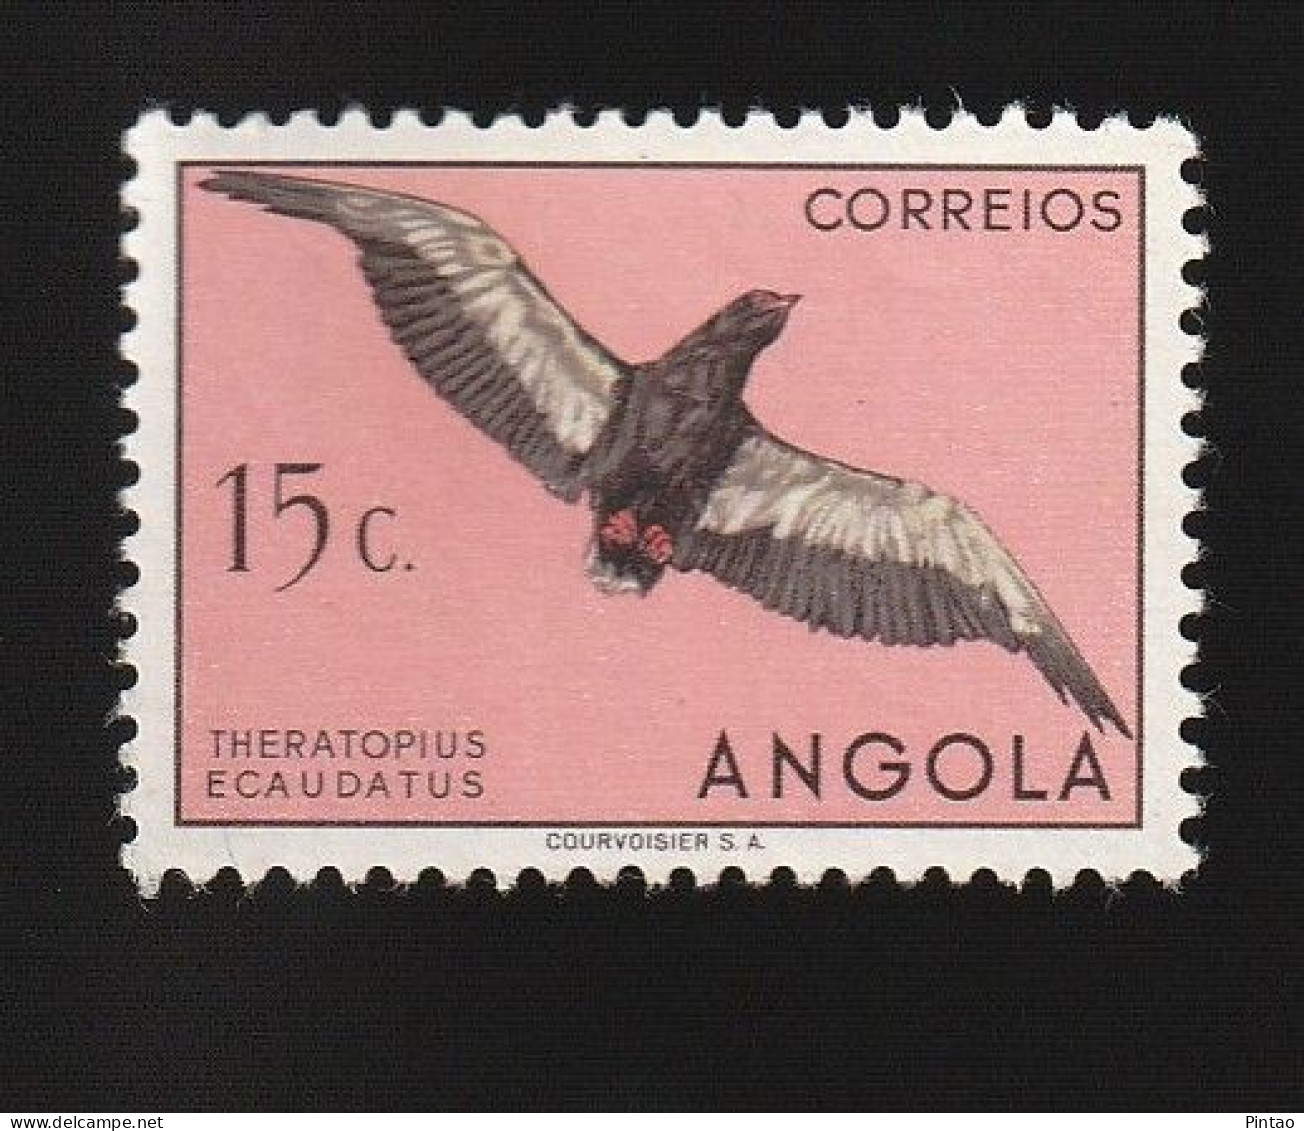 AG1813- ANGOLA 1951 Nº 328- MNH - Angola